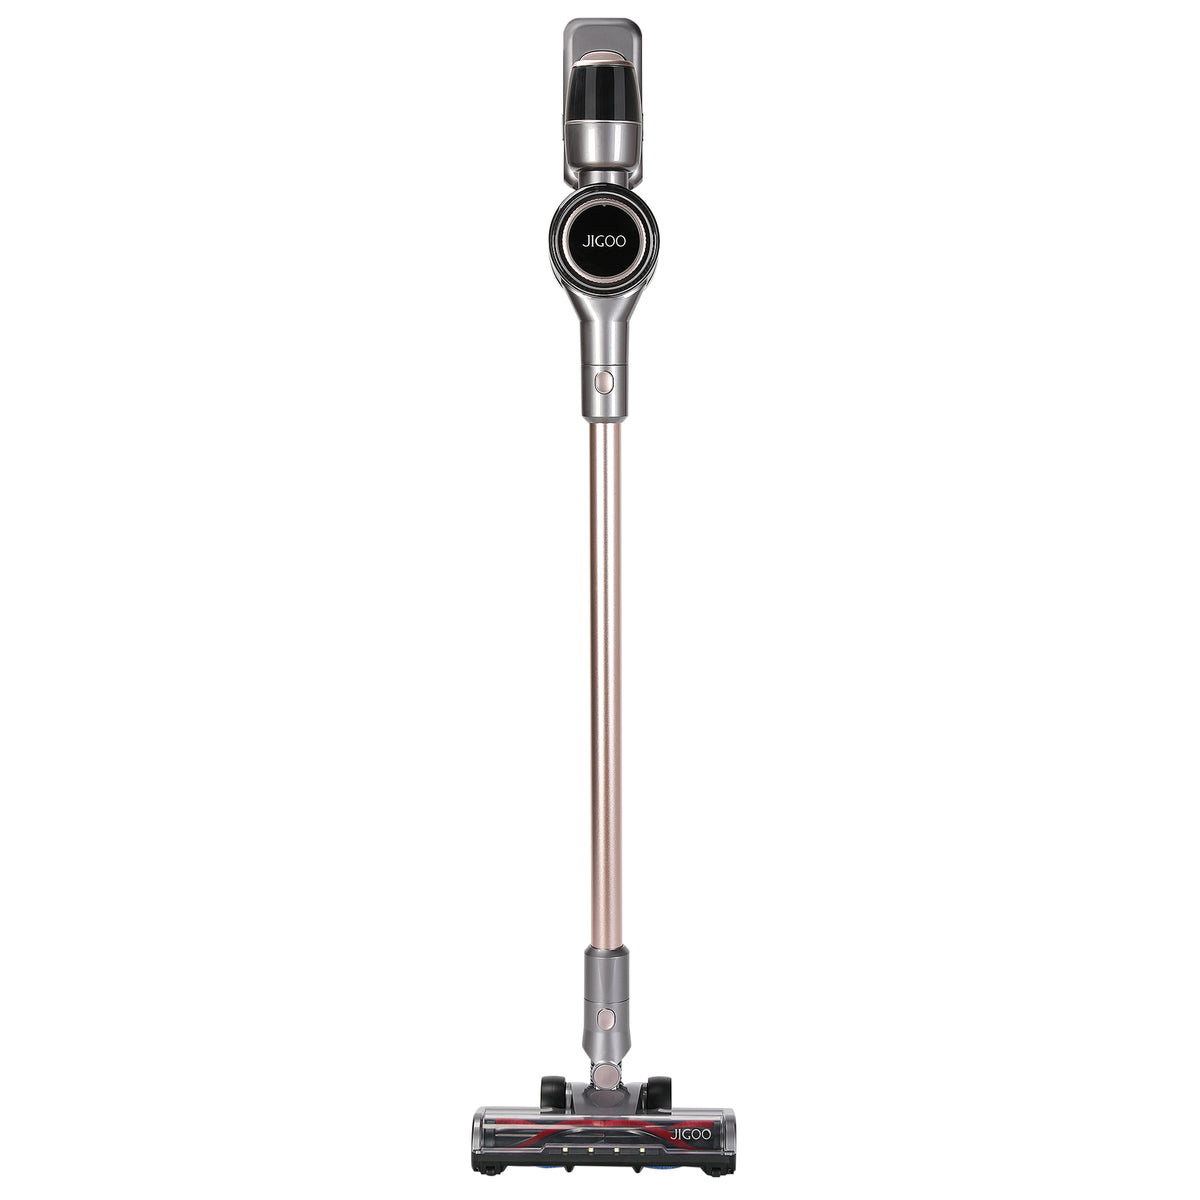 Jigoo T600 Mattress Vacuum Cleaner